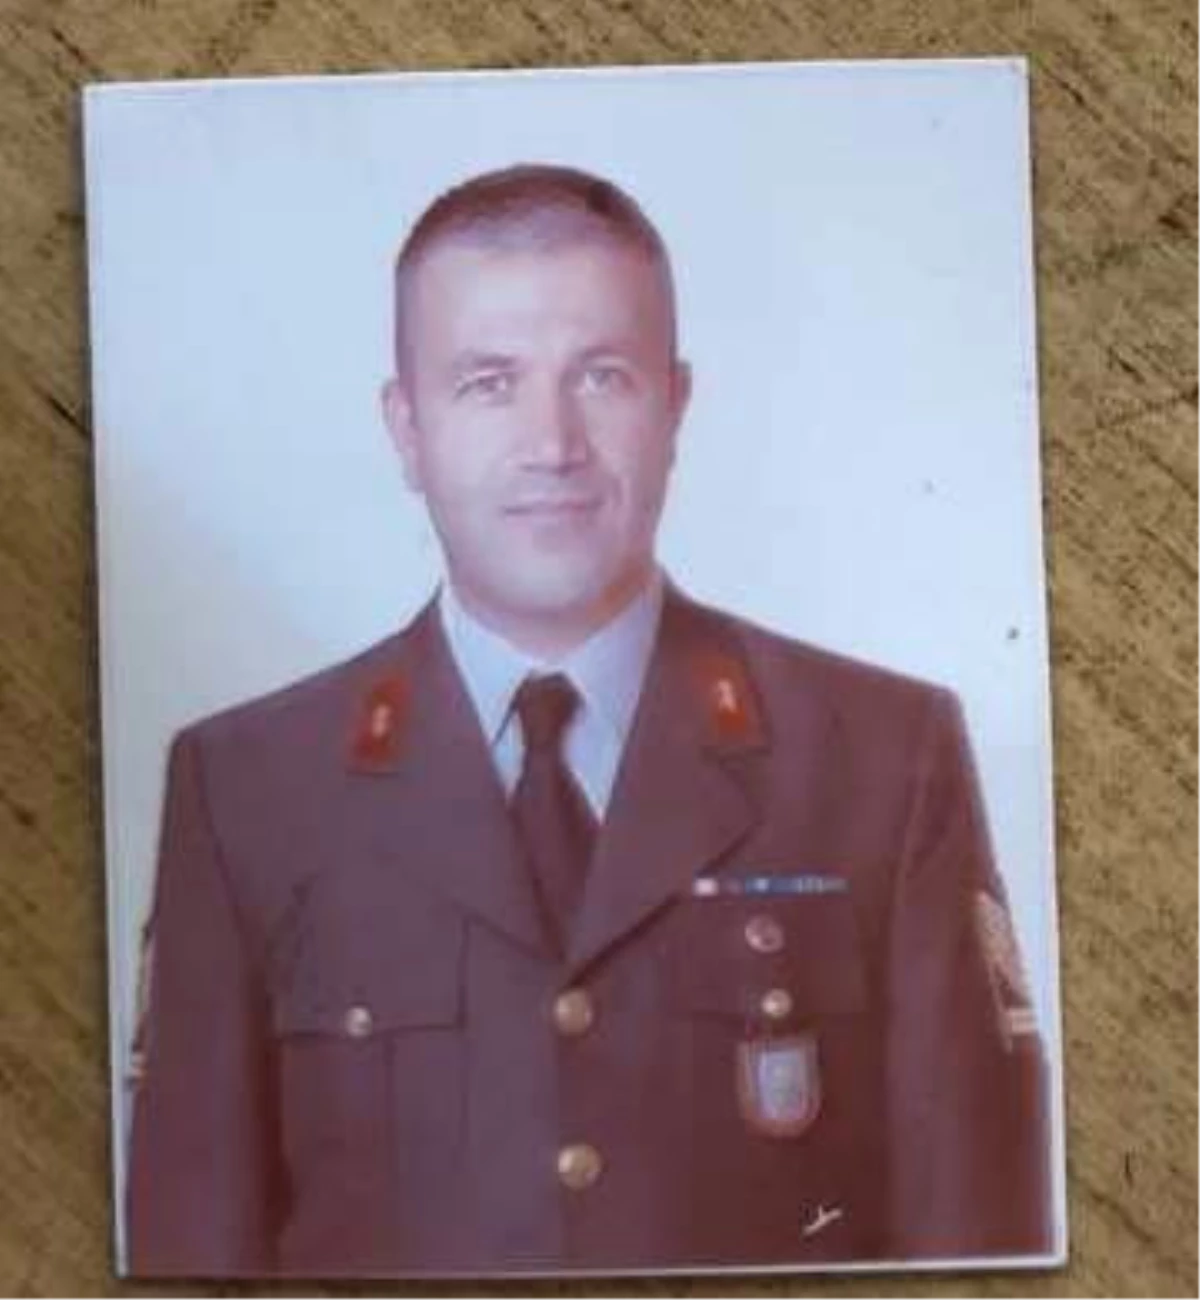 Askerin Başına Miğferle Vurup Ölümüne Sebep Olduğu İddia Edilen Komutan Hakim Karşısında